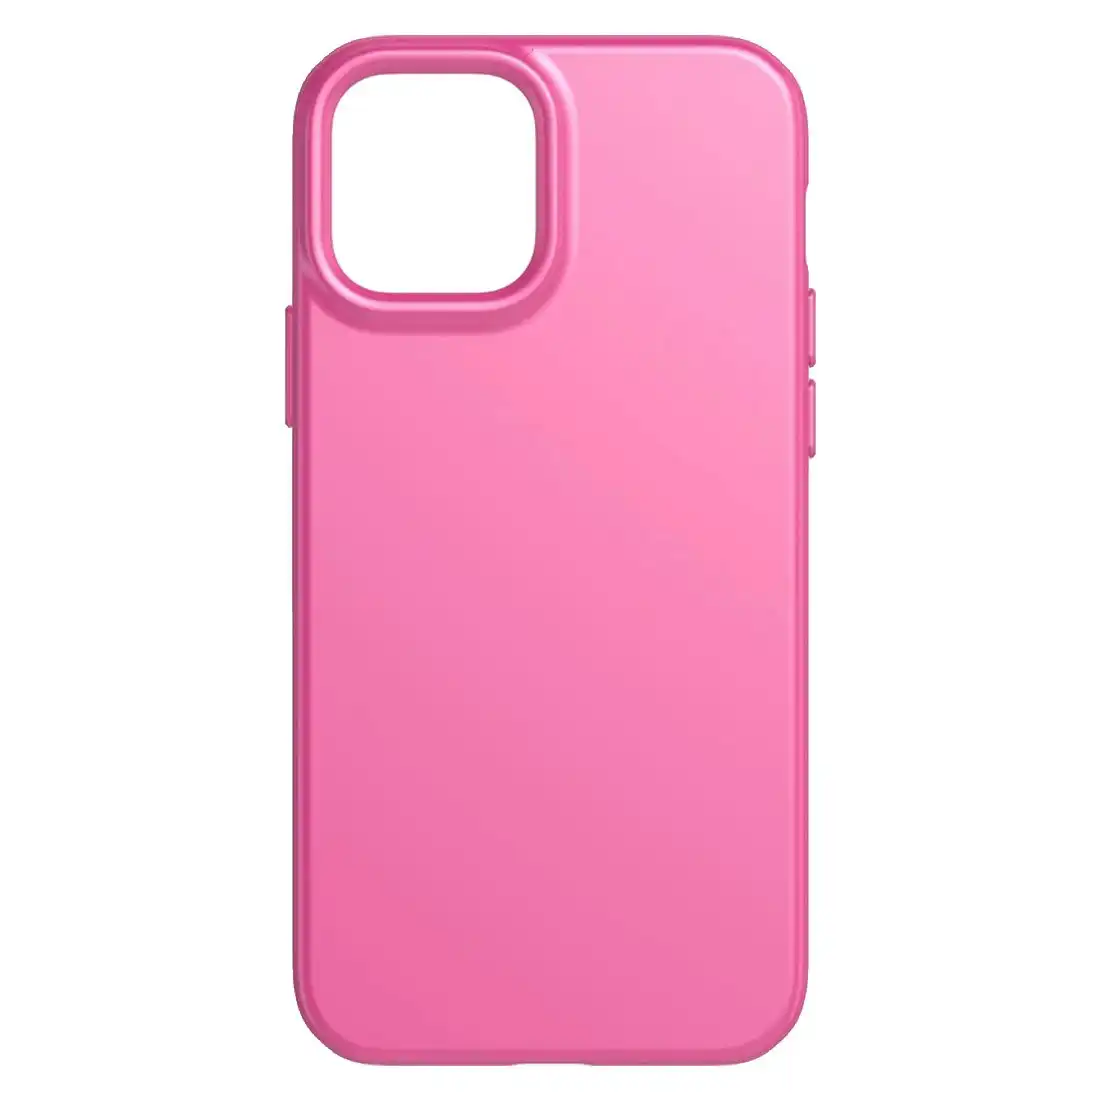 Tech21 Evo Slim Case for iPhone 12/12 Pro T21-8384 - Fuchsia